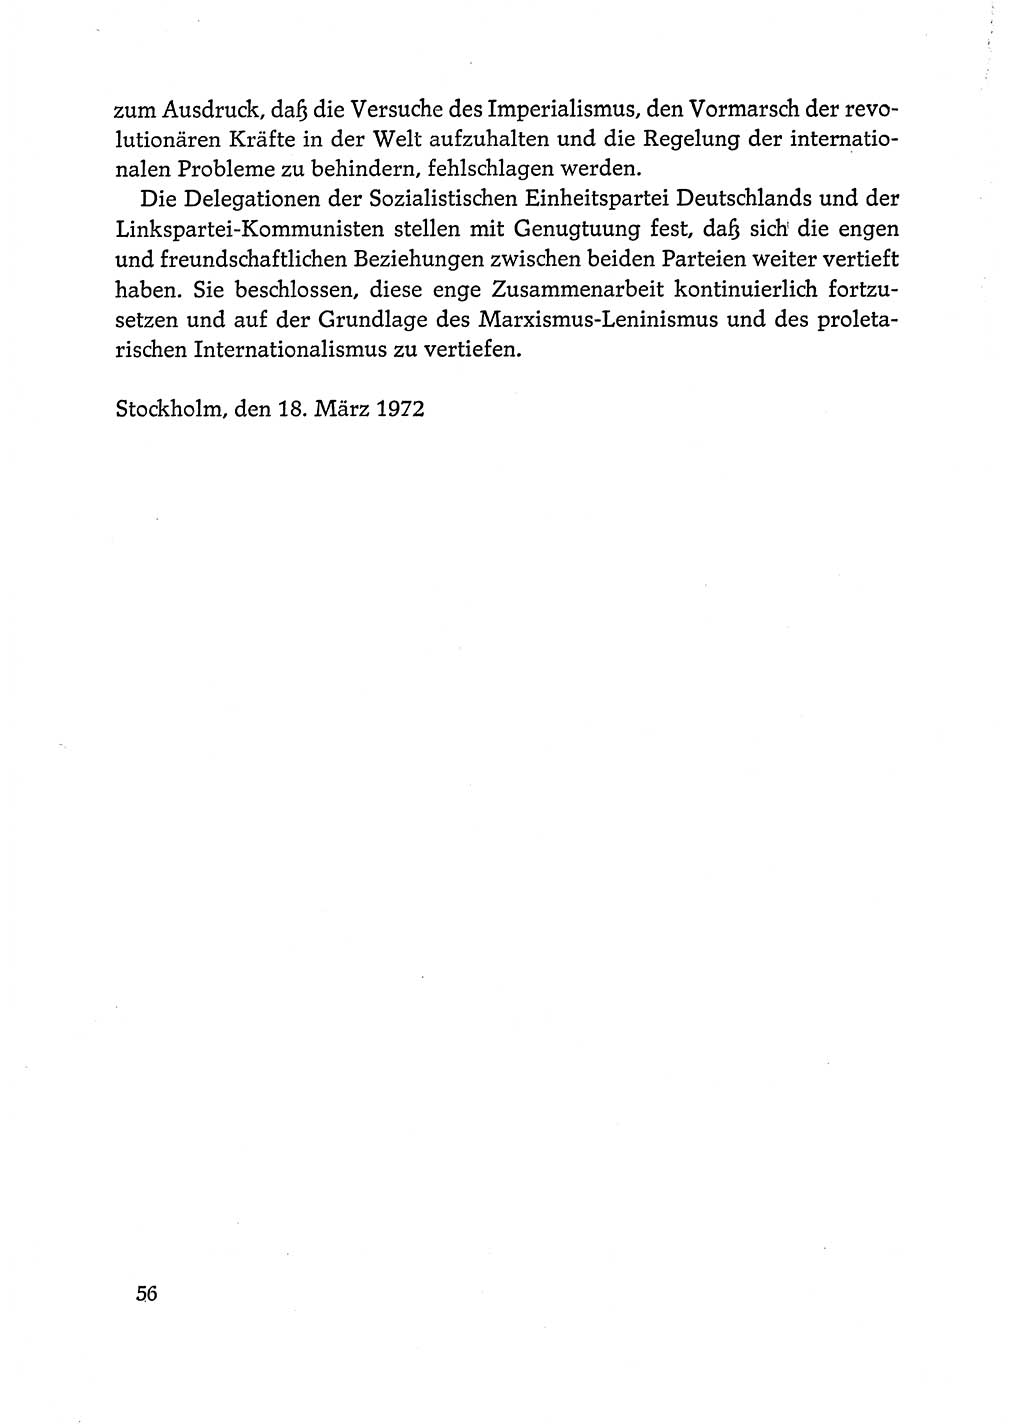 Dokumente der Sozialistischen Einheitspartei Deutschlands (SED) [Deutsche Demokratische Republik (DDR)] 1972-1973, Seite 56 (Dok. SED DDR 1972-1973, S. 56)